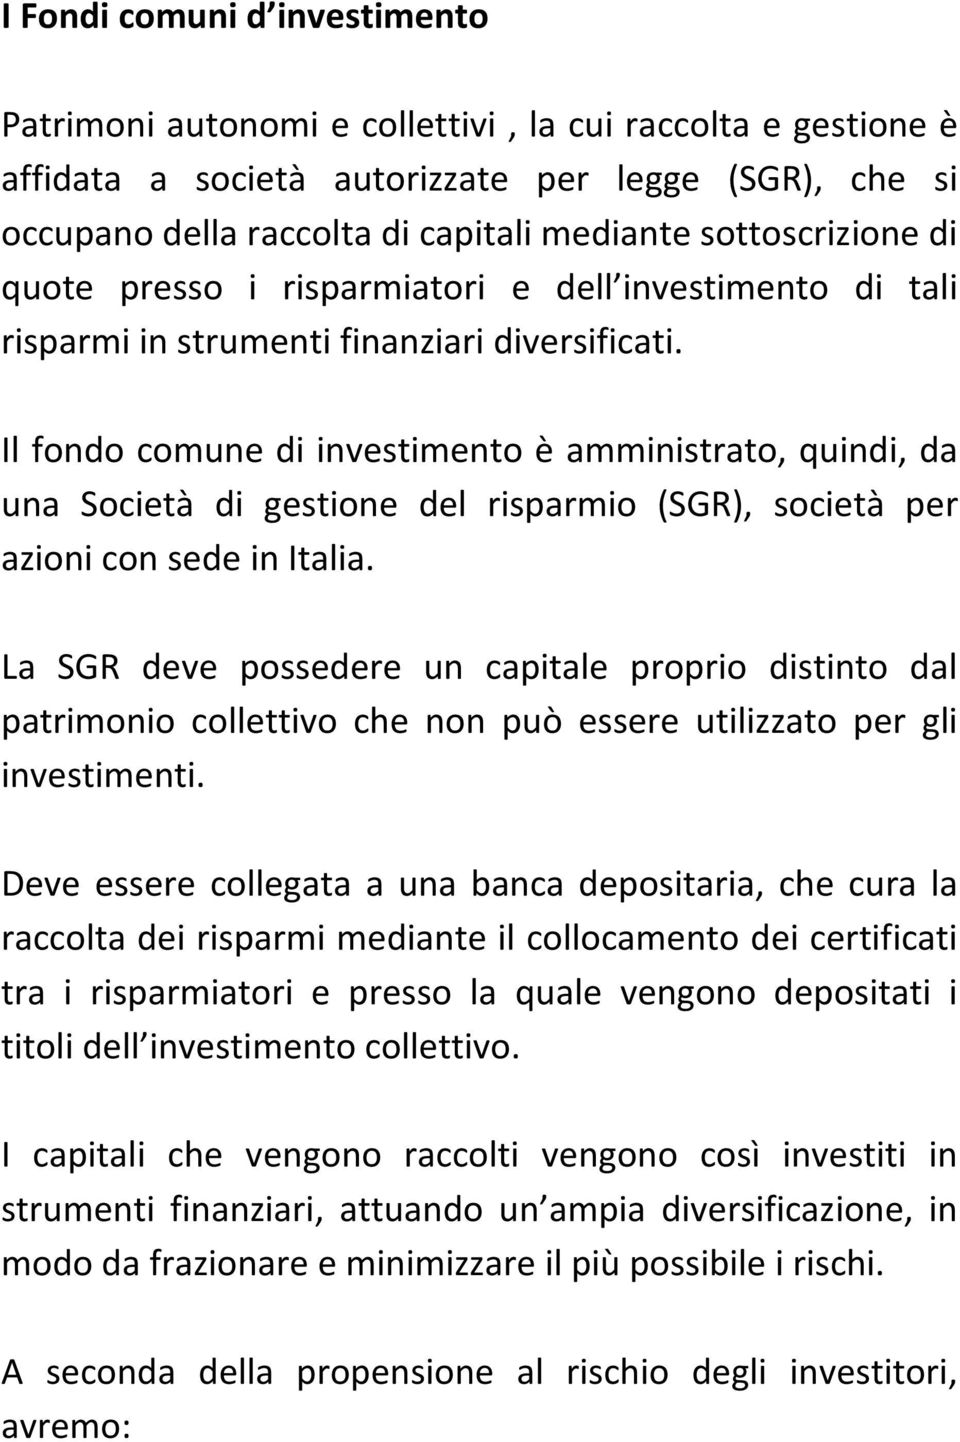 Il fondo comune di investimento è amministrato, quindi, da una Società di gestione del risparmio (SGR), società per azioni con sede in Italia.